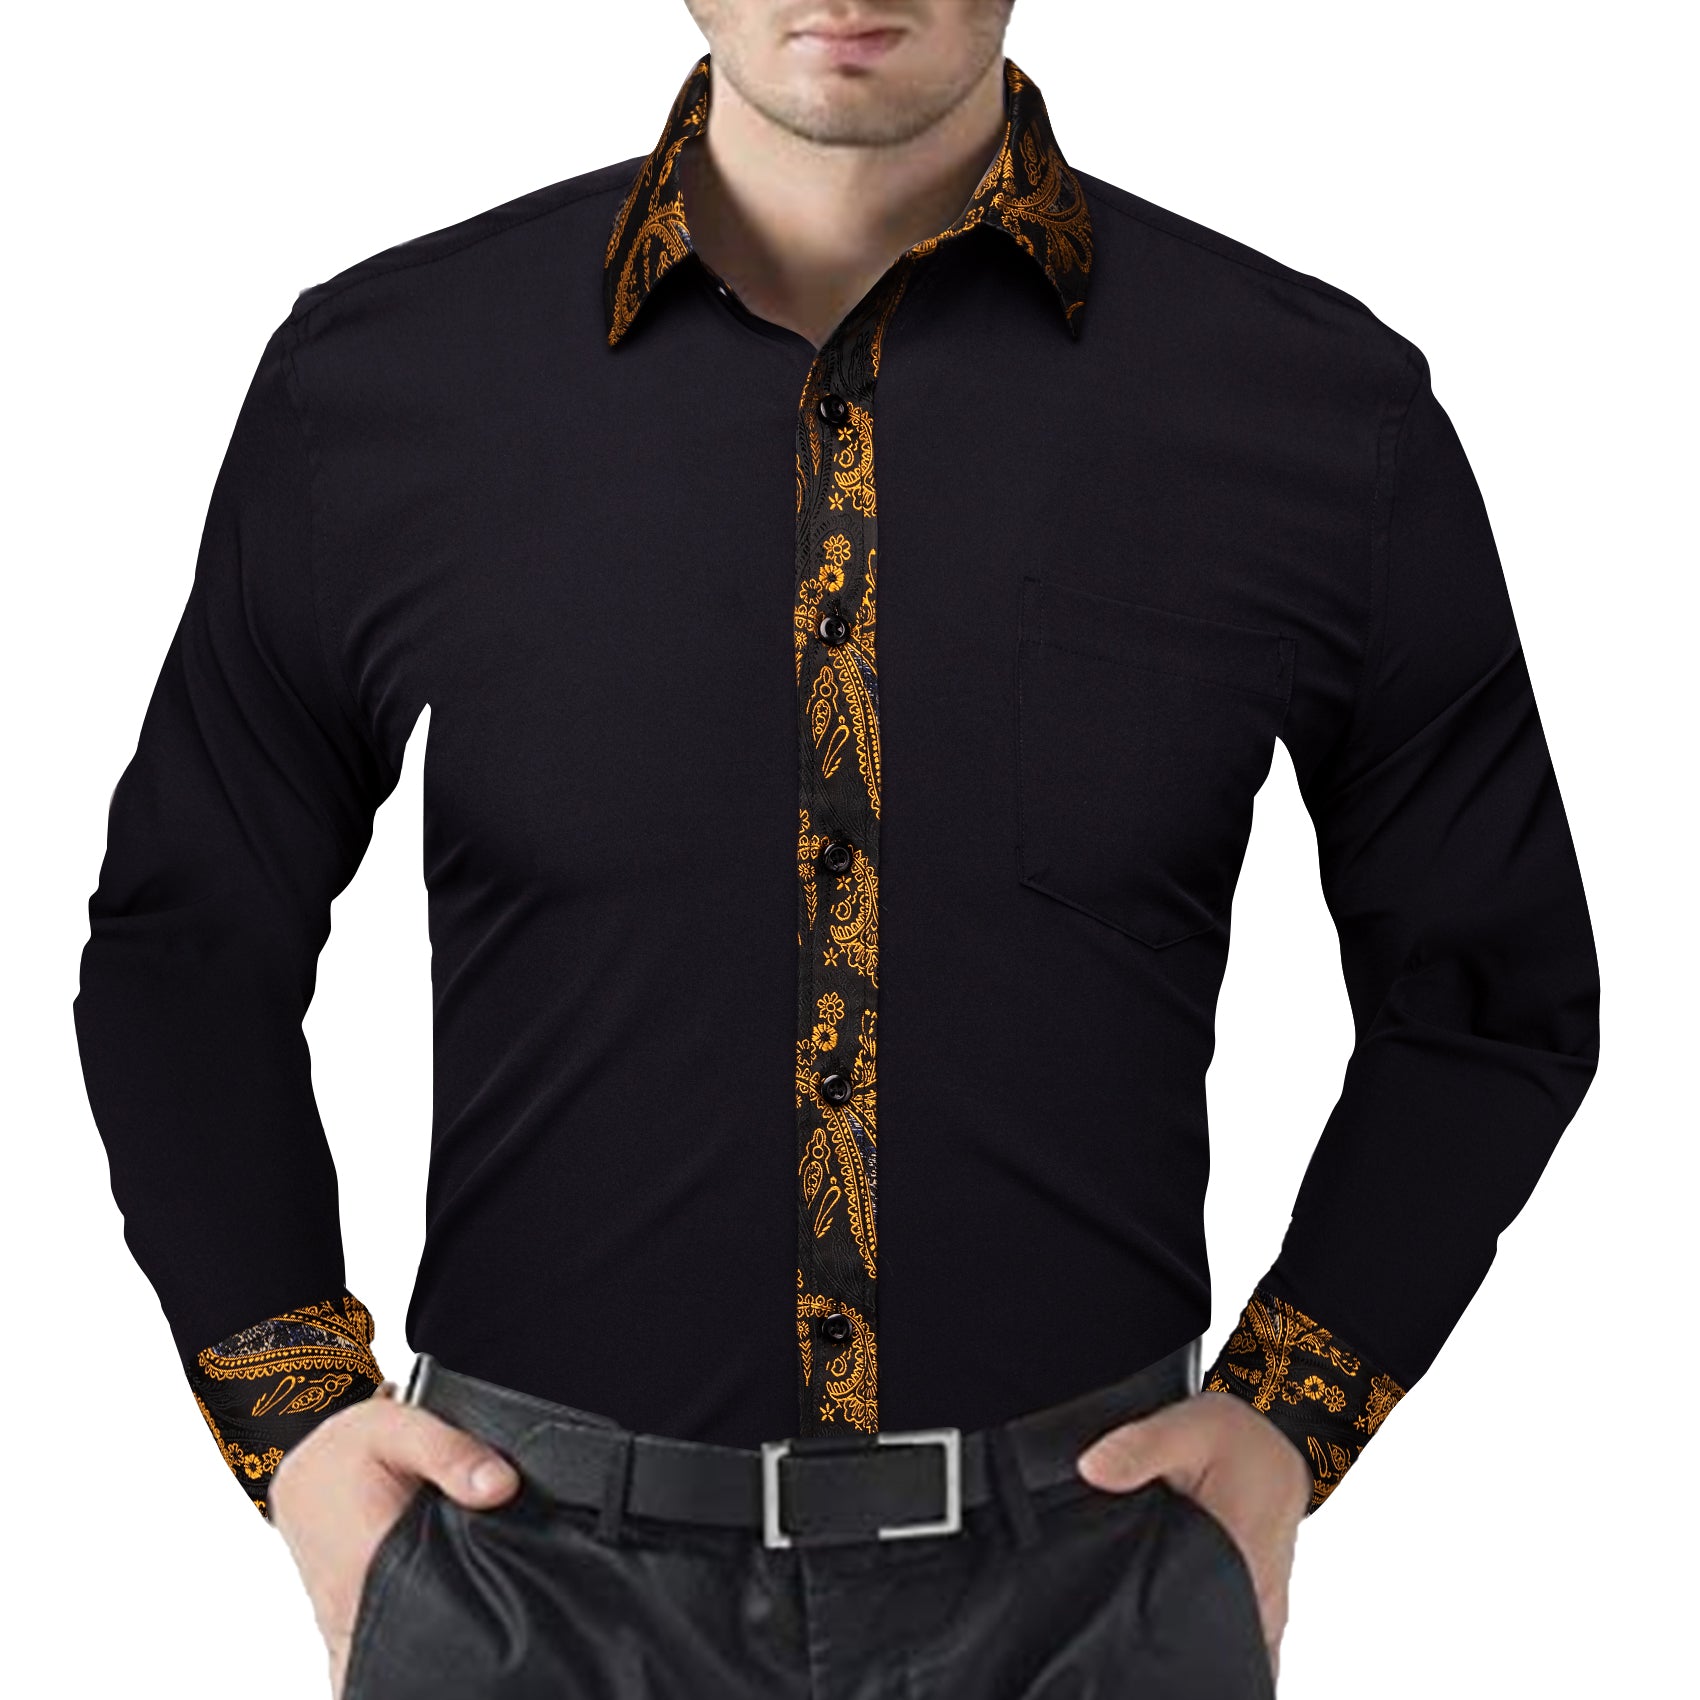 Barry.wang Black Golden Splicing Men's Business Shirt